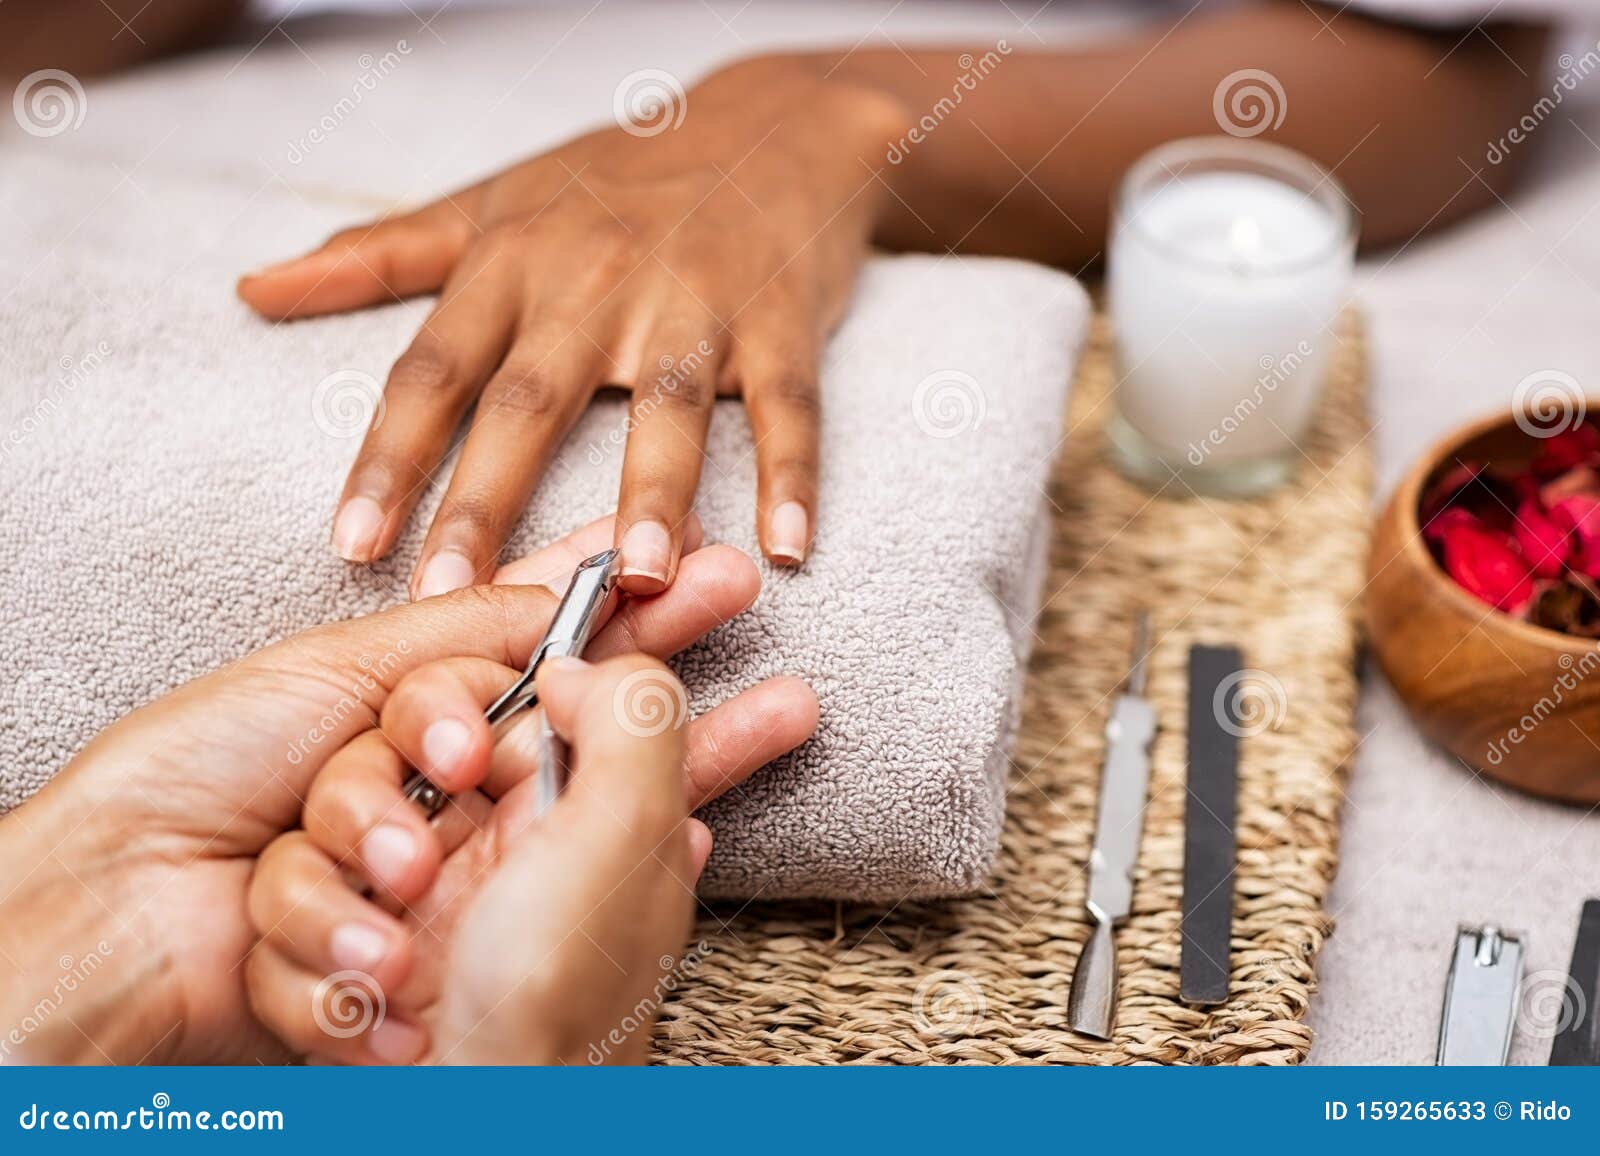 woman clipping nails at salon